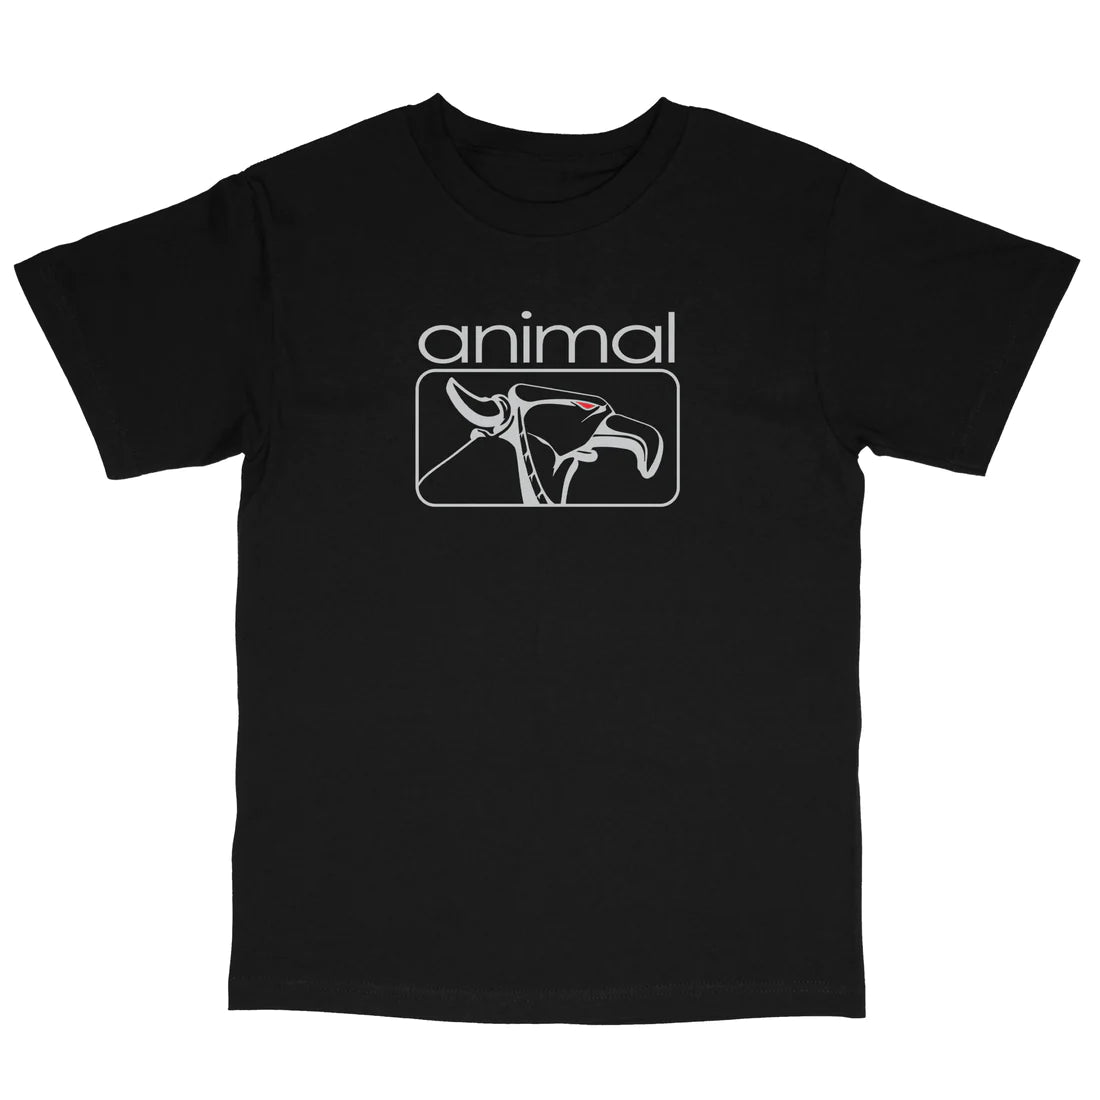 Animal 2K T-Shirt Black/Grey